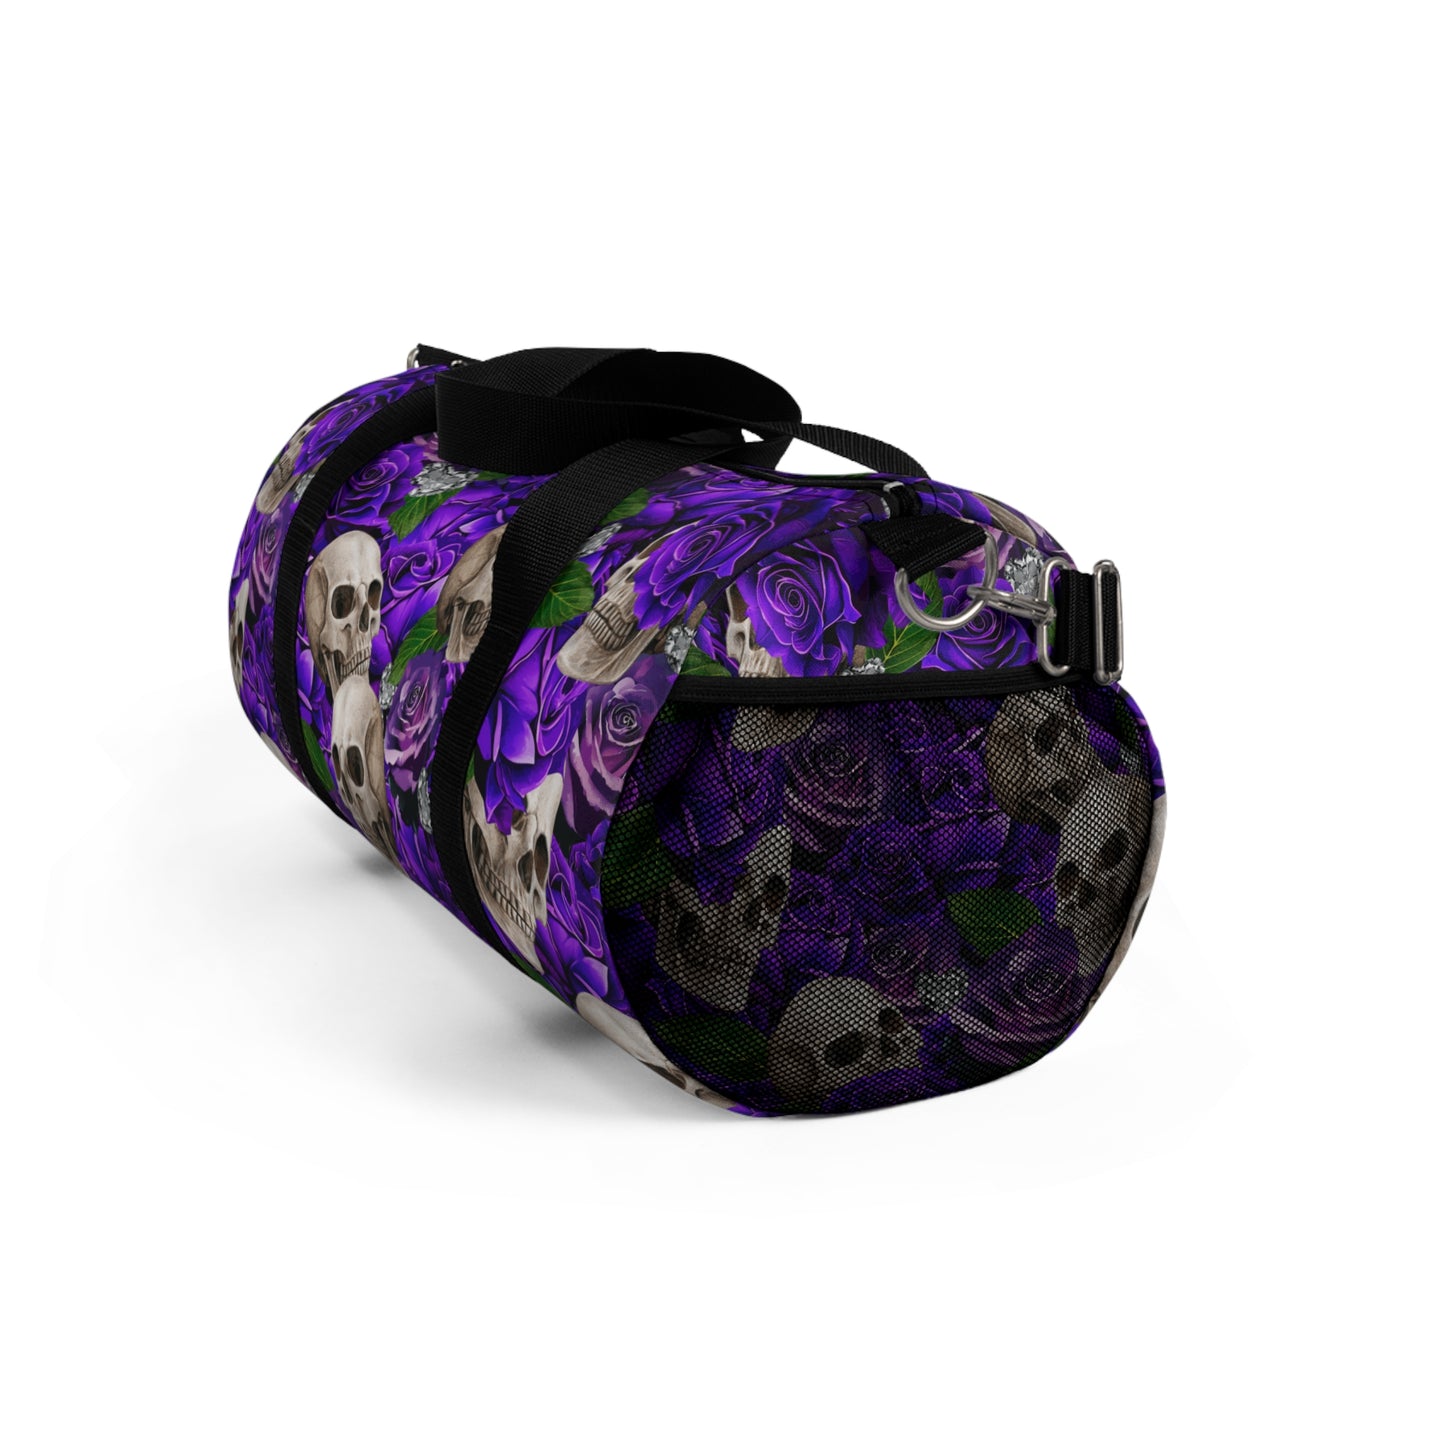 Skulls ‘n’ Roses | Purple | Duffel Bag